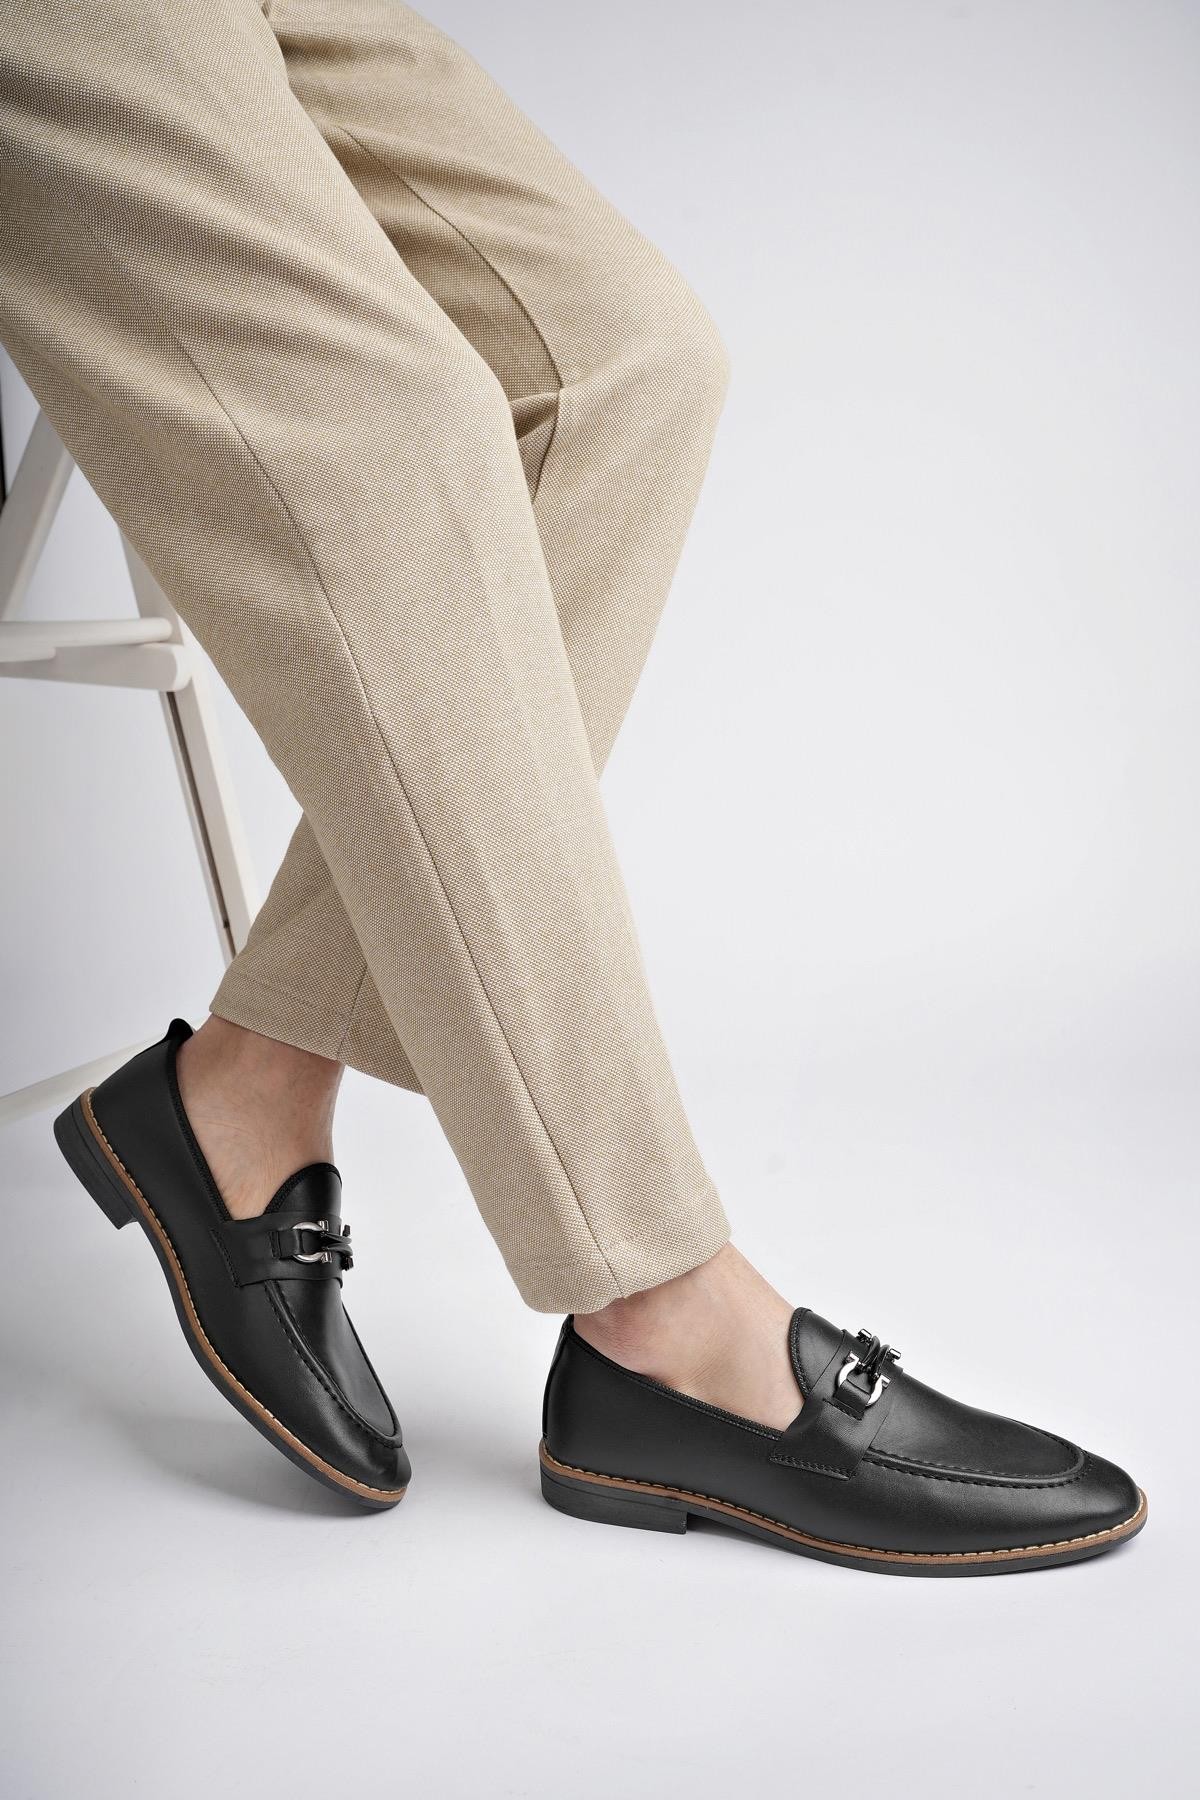 Muggo M7702 Garantili Erkek Günlük Klasik Casual Ayakkabı